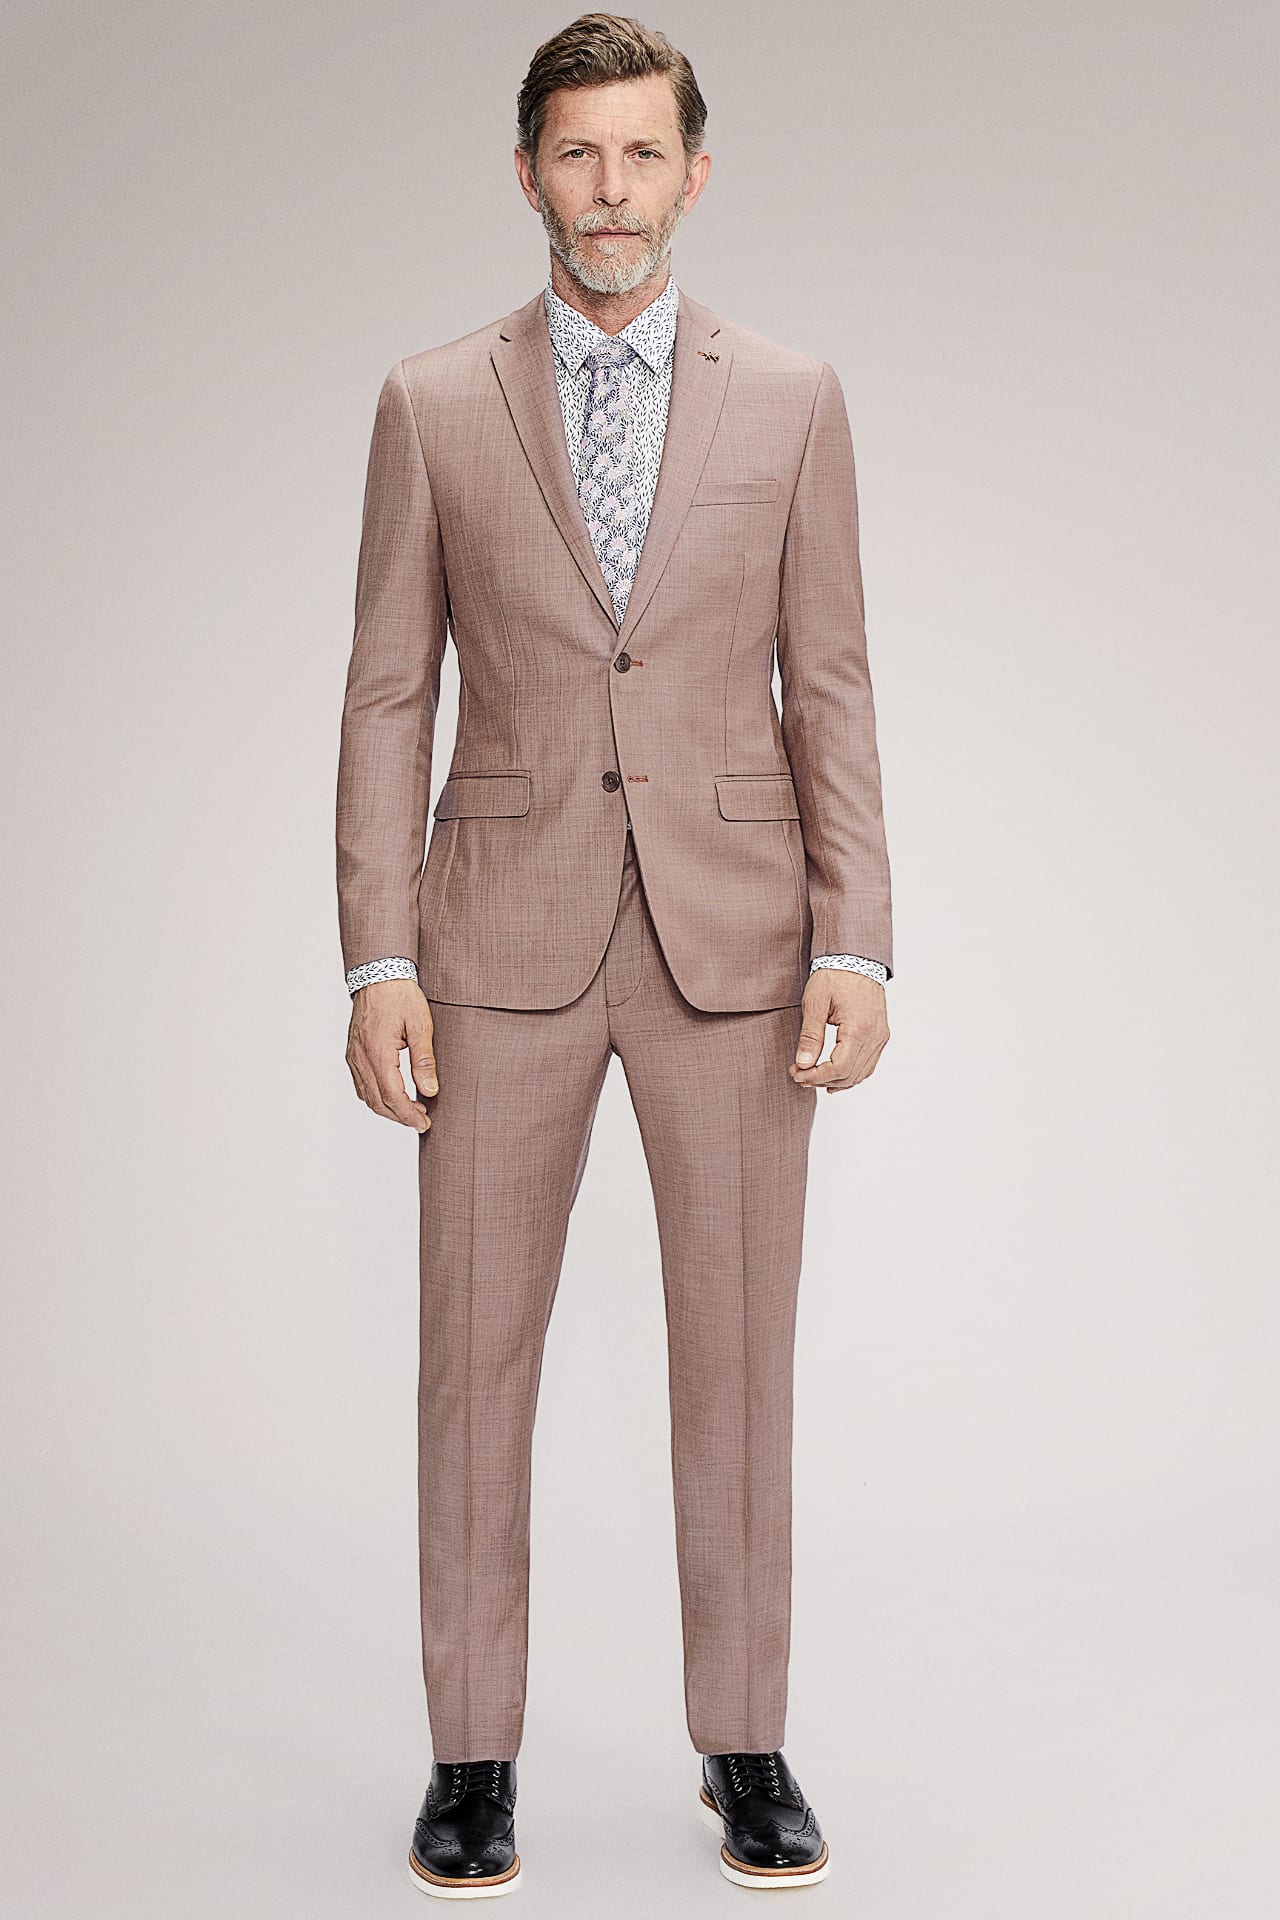 Suit Fit Guide - Slim Fit vs Modern Fit Suits | Men's Wearhouse